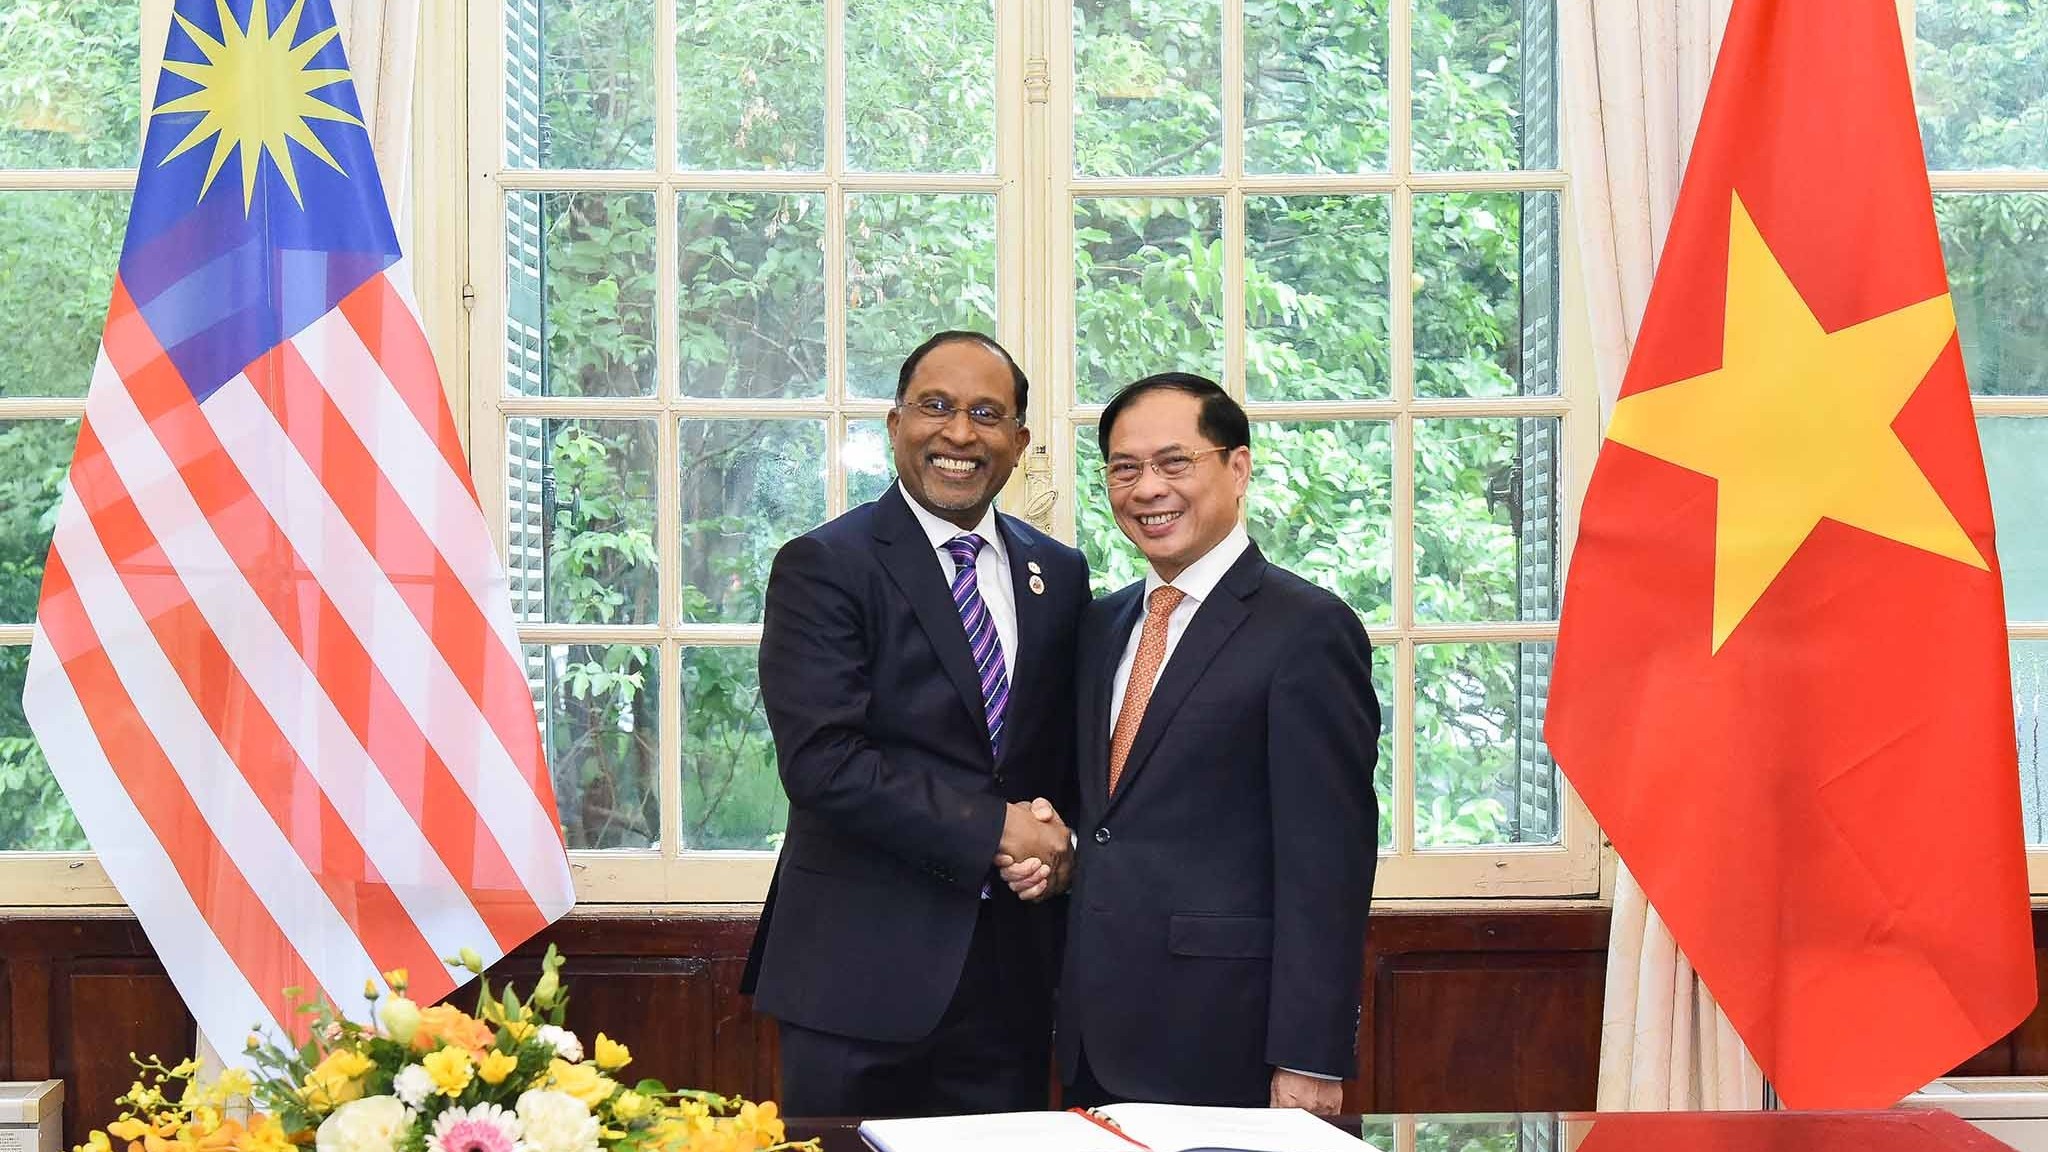 Bộ trưởng Ngoại giao Bùi Thanh Sơn đón chính thức Bộ trưởng Ngoại giao Malaysia